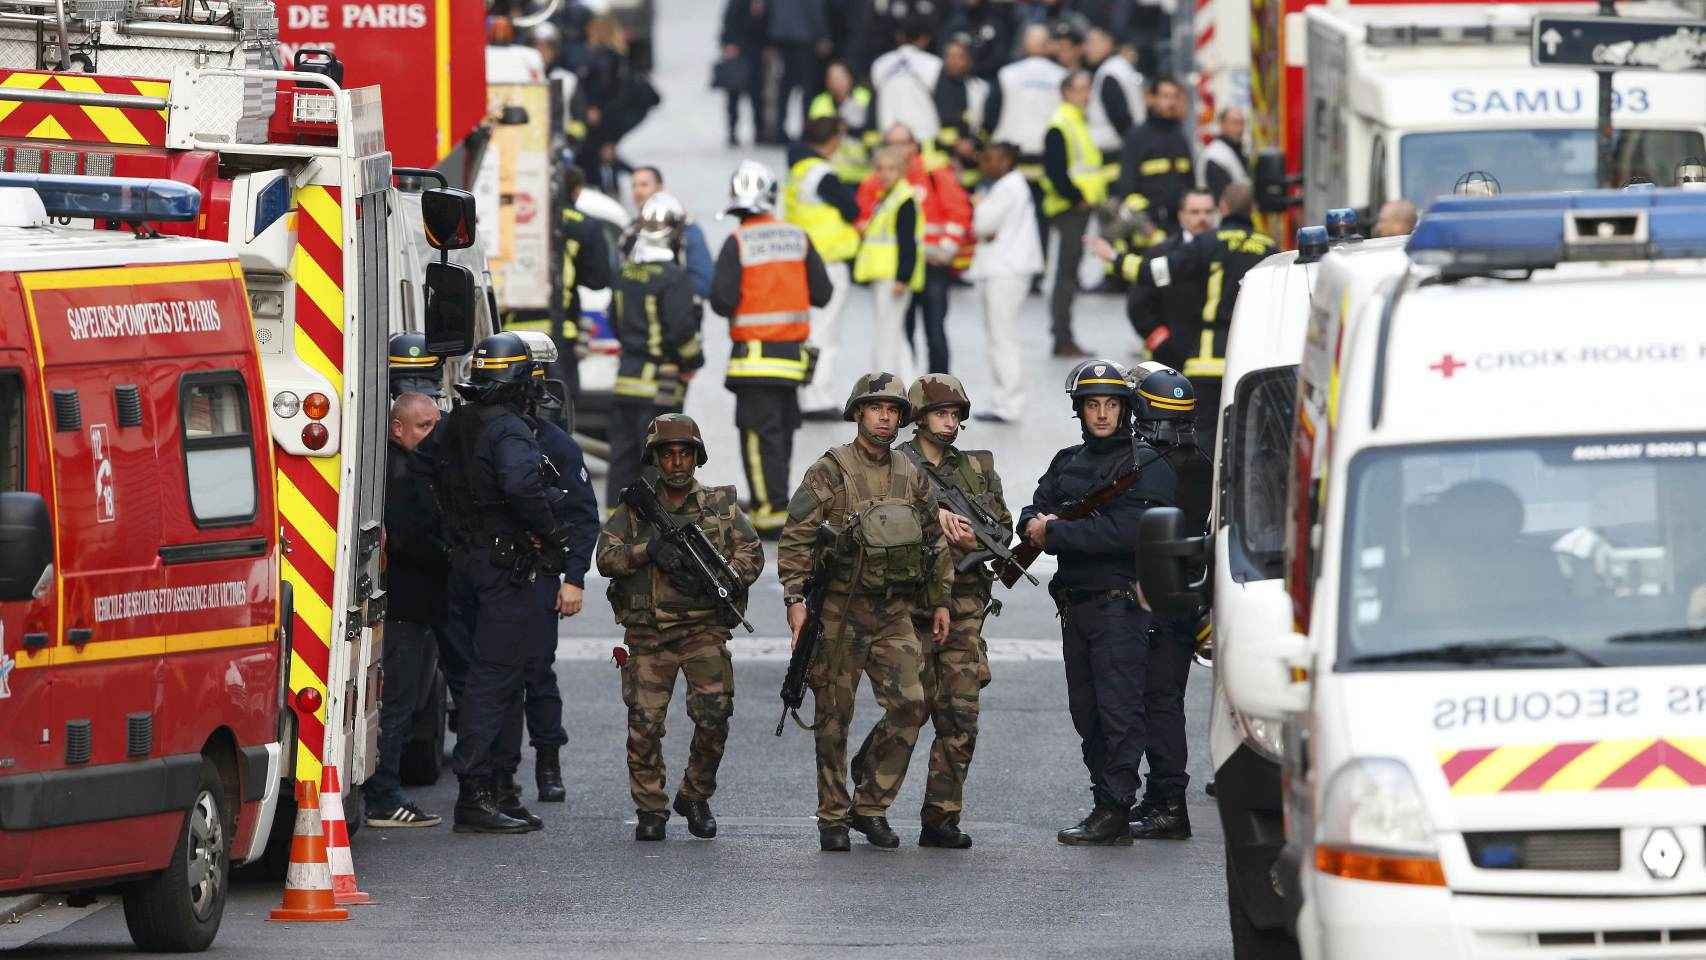 Efectivos de seguridad y de emergencia movilizados en Saint Denis